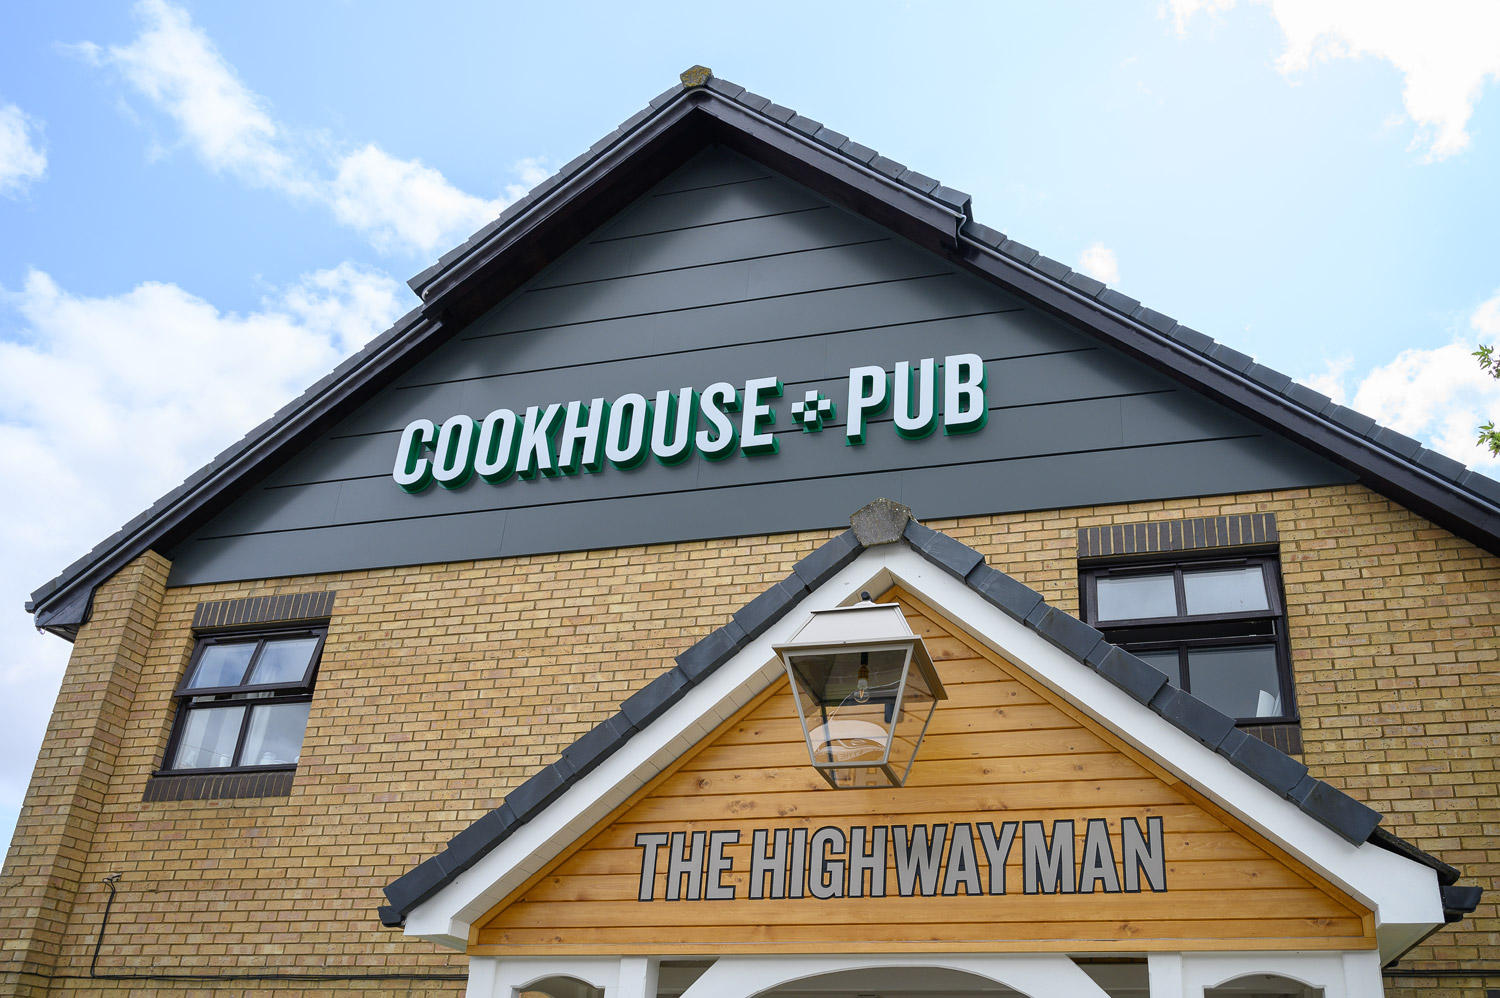 Cookhouse + Pub Restaurant The Highwayman Cookhouse + Pub St Neots 01480 408540